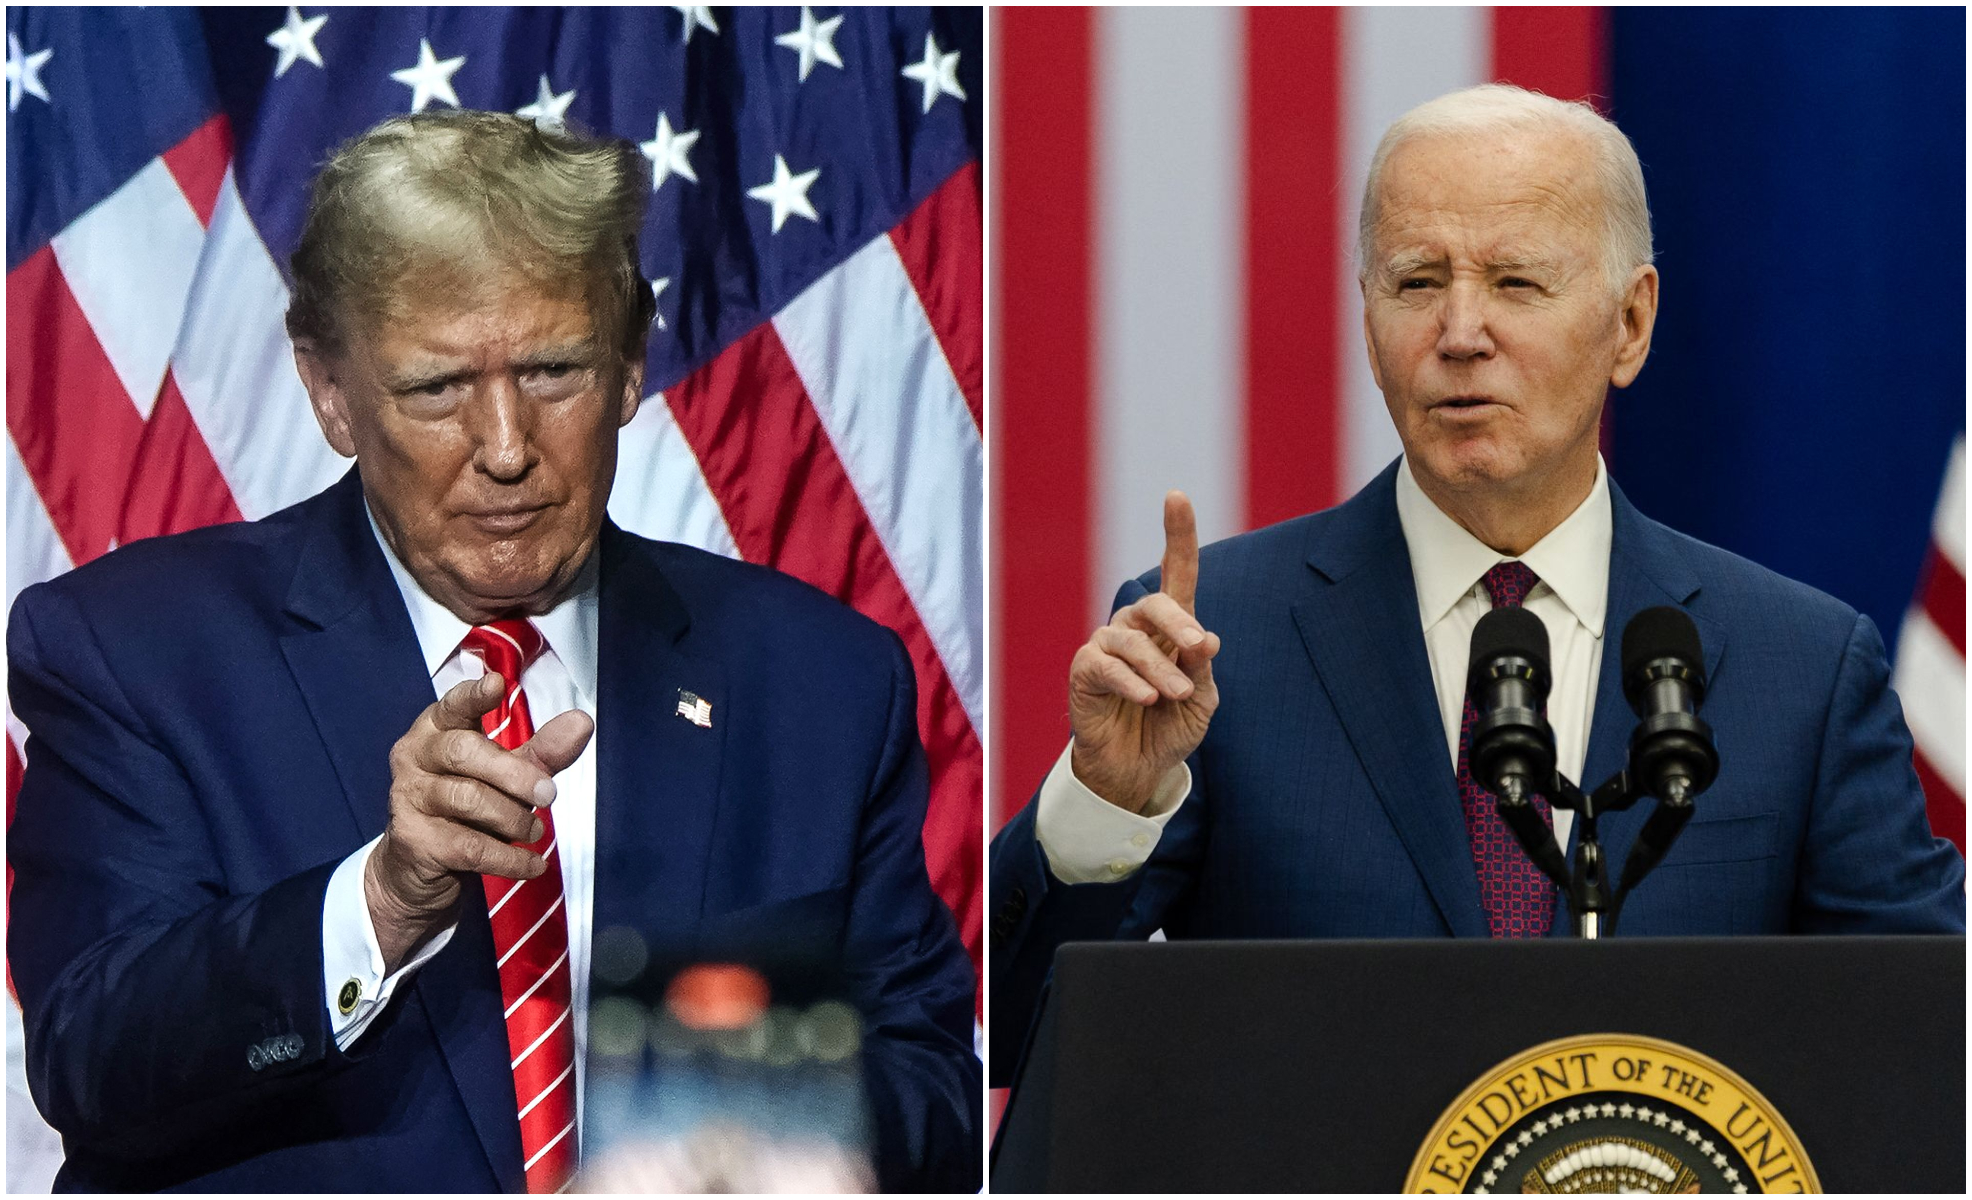 Donald Trump y Joe Biden son los representantes de los partidos Republicano y Demócrata para las elecciones presidenciales en EE. UU. este 2024. (Foto Prensa Libre: Elijah Nouvelage / AFP / GETTY IMAGES NORTH AMERICA / Getty Images via AFP)